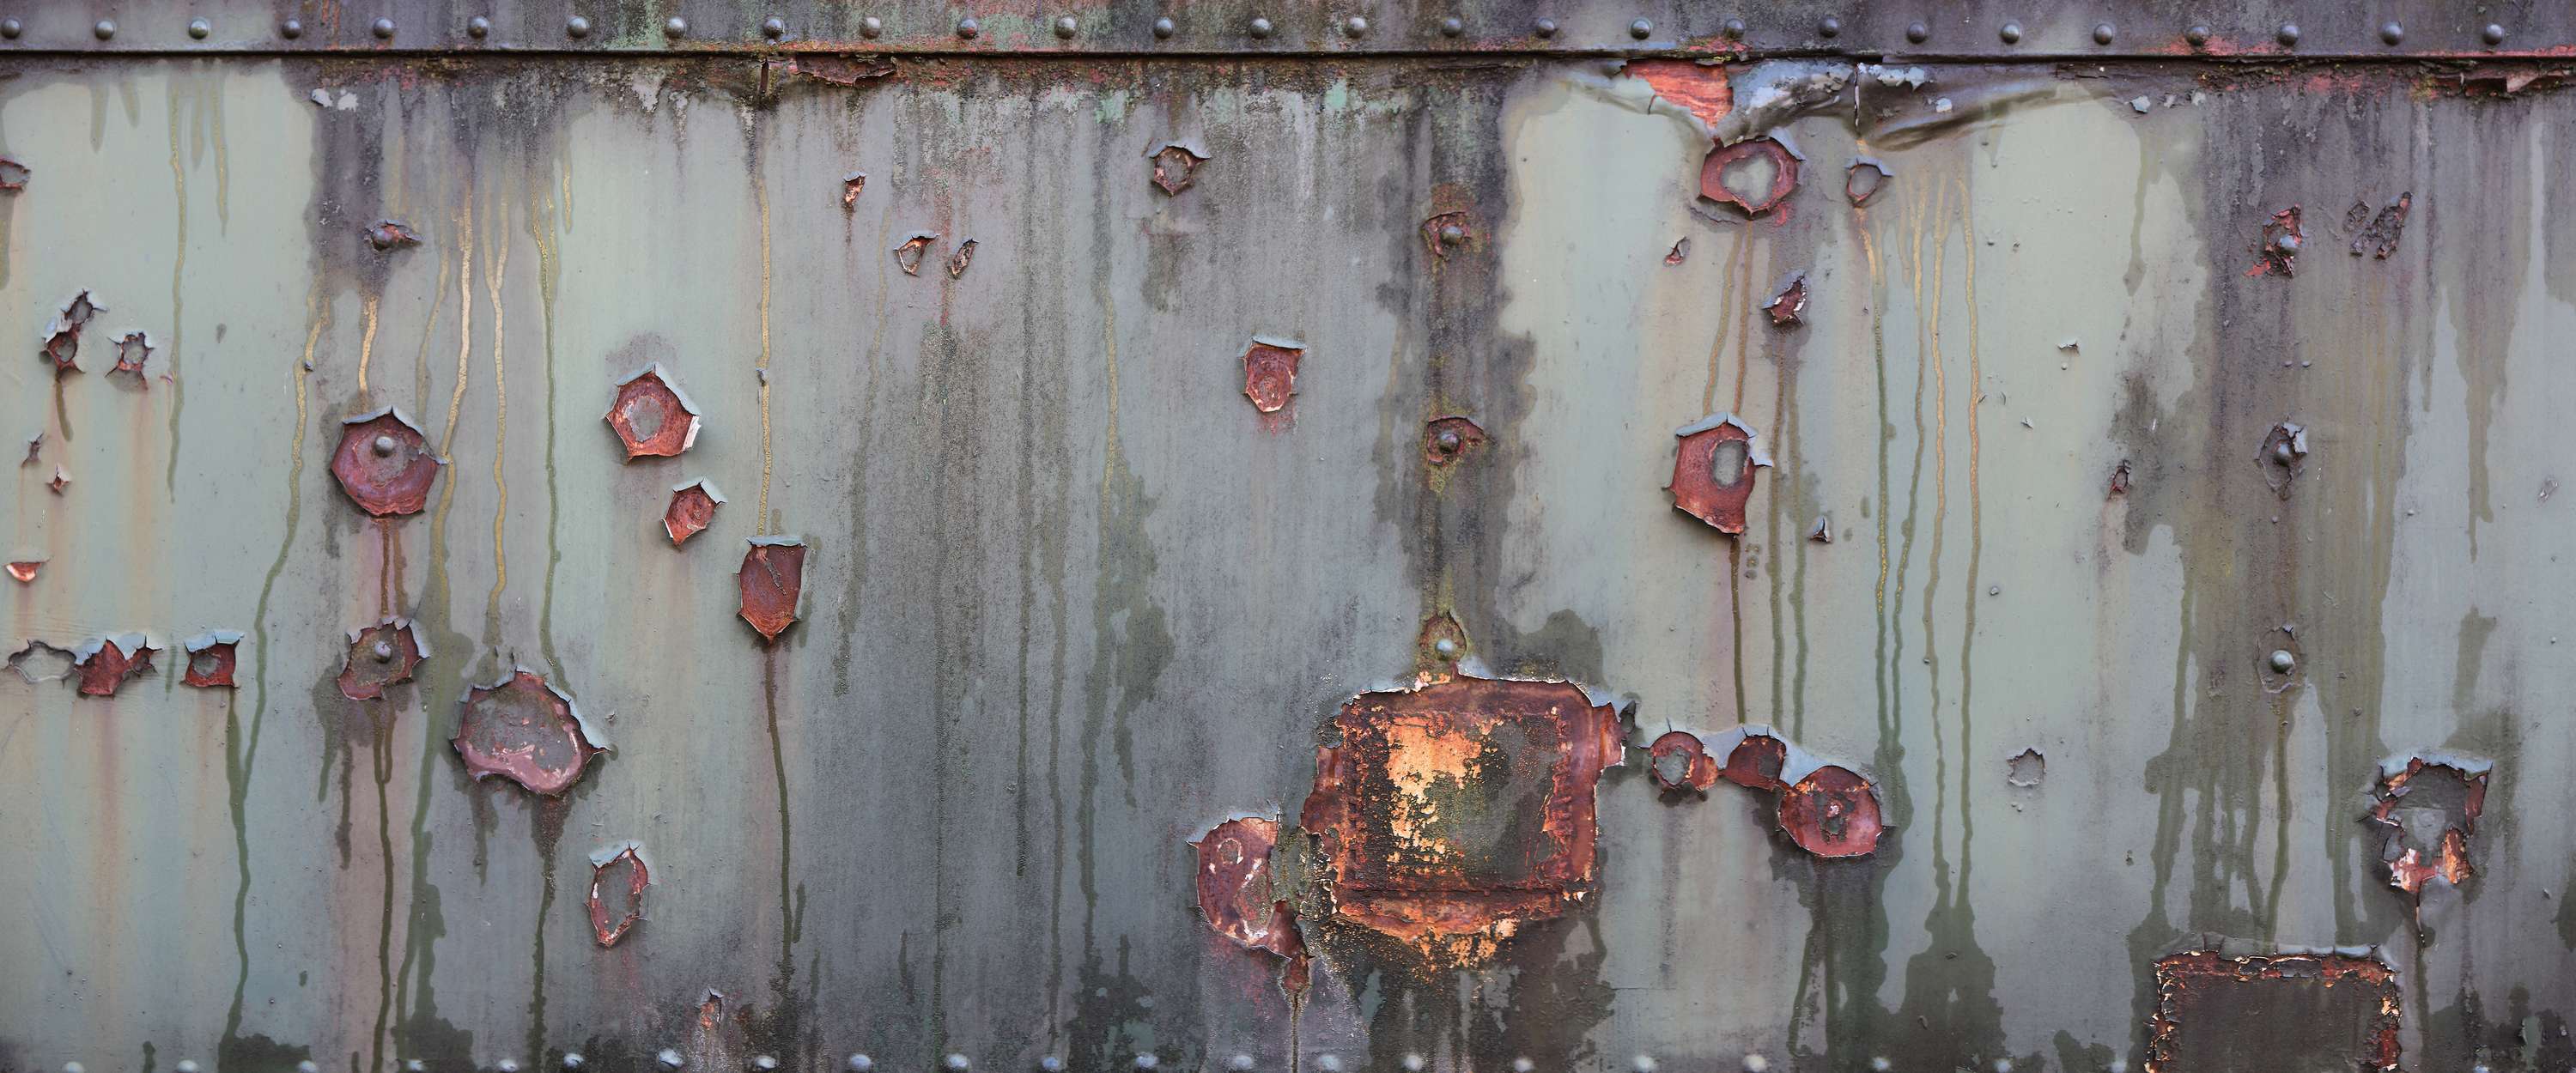             Pared metálica - Papel pintado industrial con aspecto oxidado y usado
        